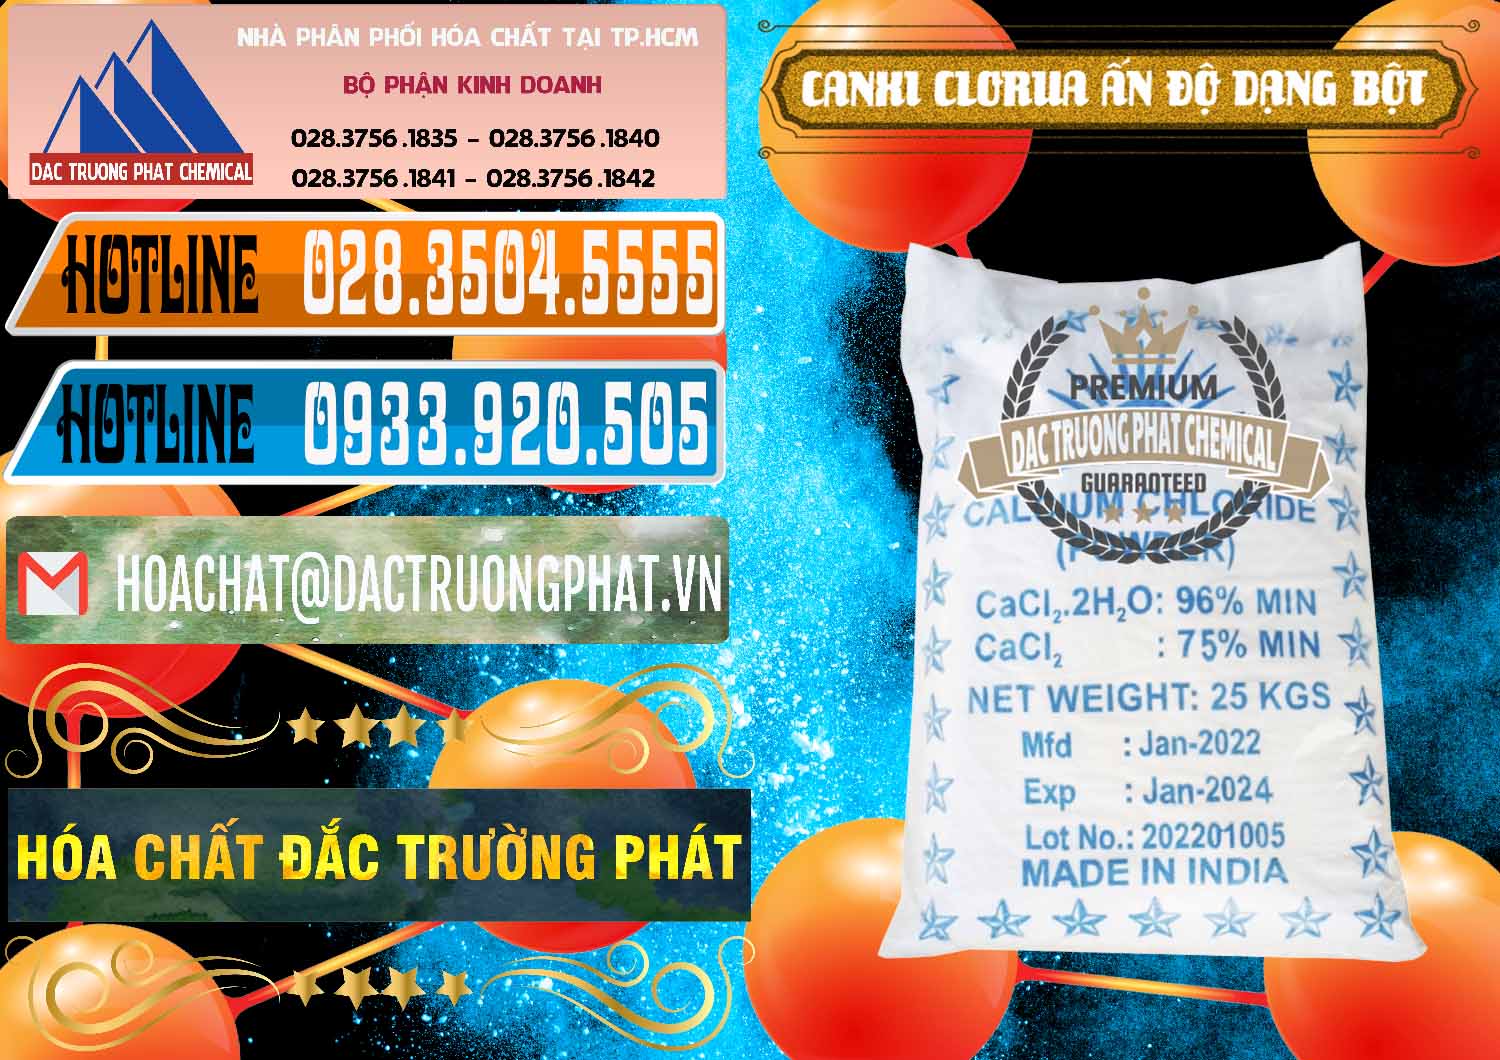 Cty bán & cung cấp CaCl2 – Canxi Clorua 96% Dạng Bột Ấn Độ India - 0420 - Cty kinh doanh - cung cấp hóa chất tại TP.HCM - stmp.net